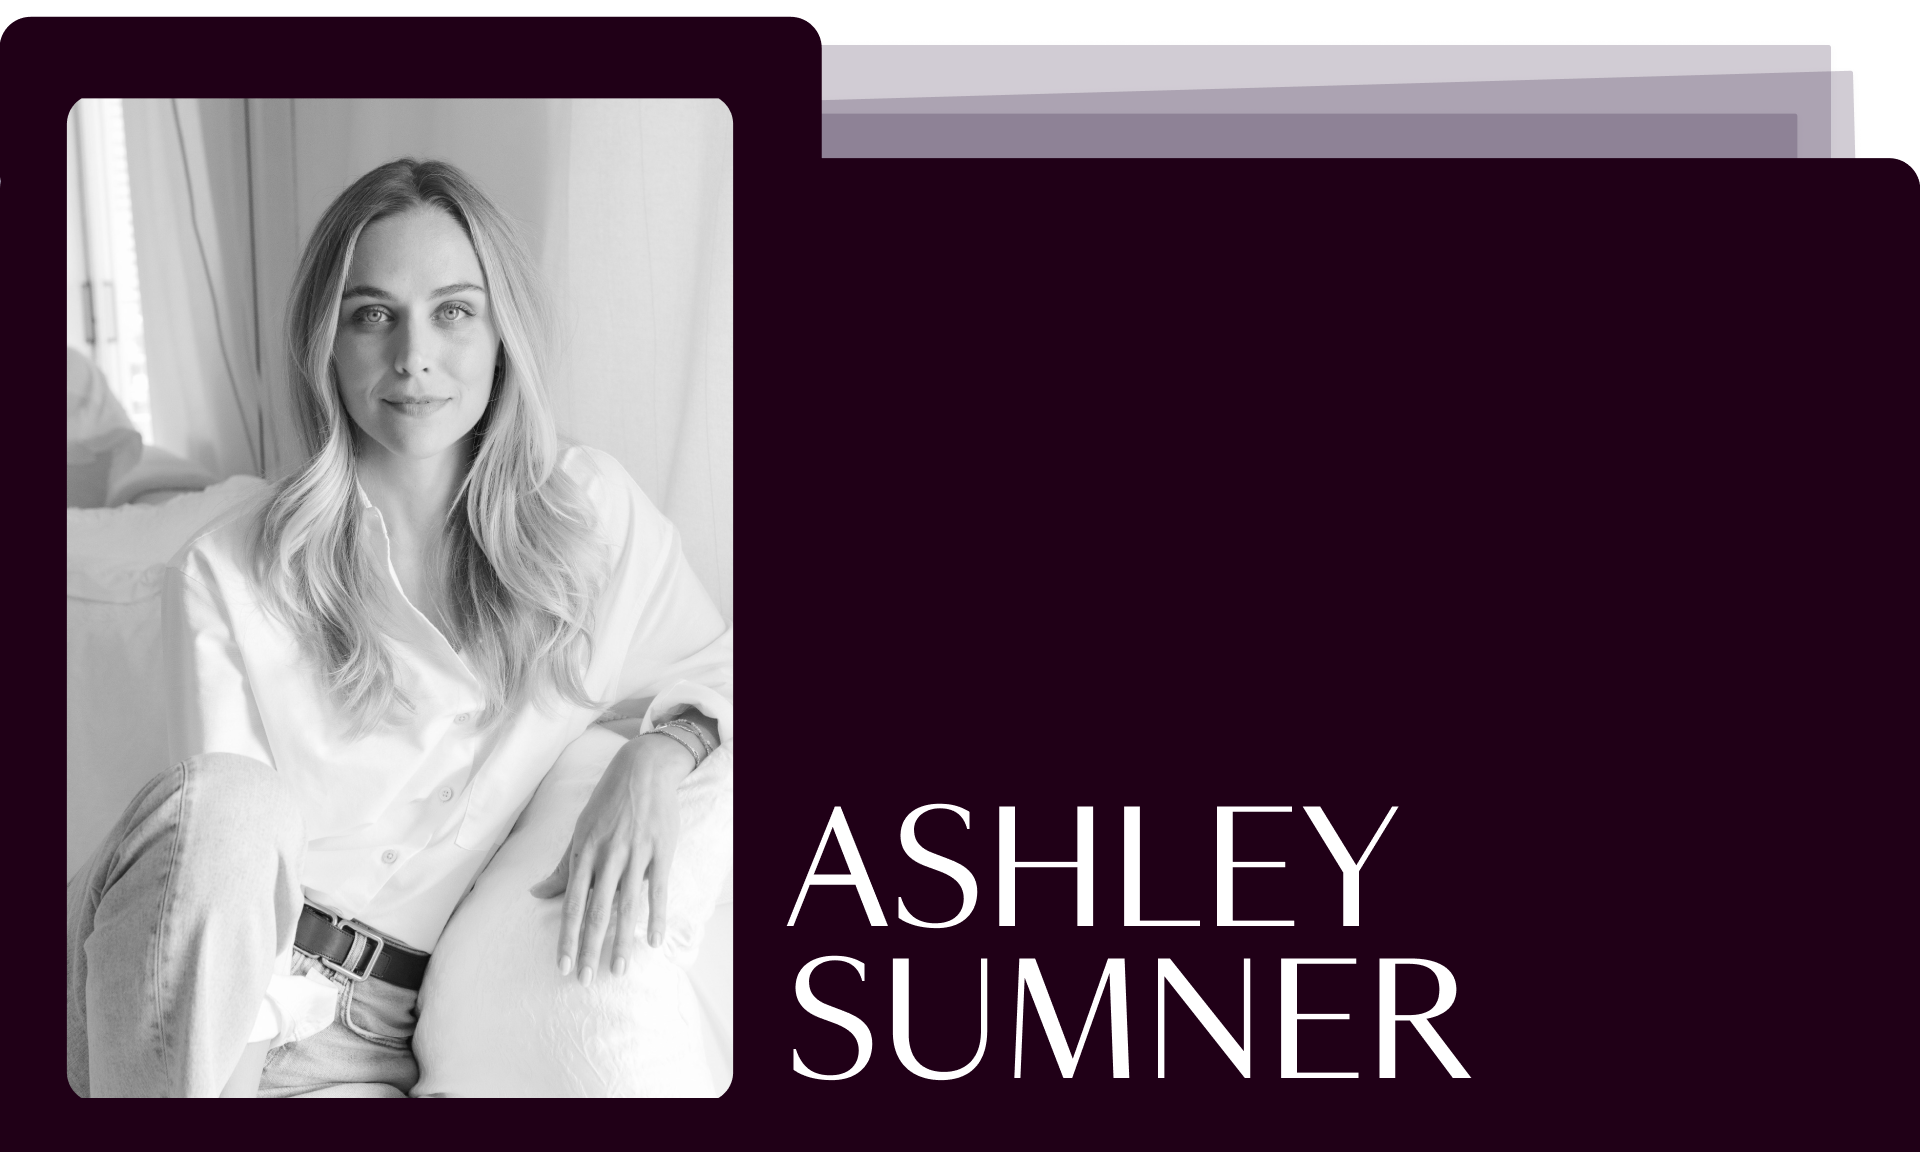 Ashley Sumner action items headshot